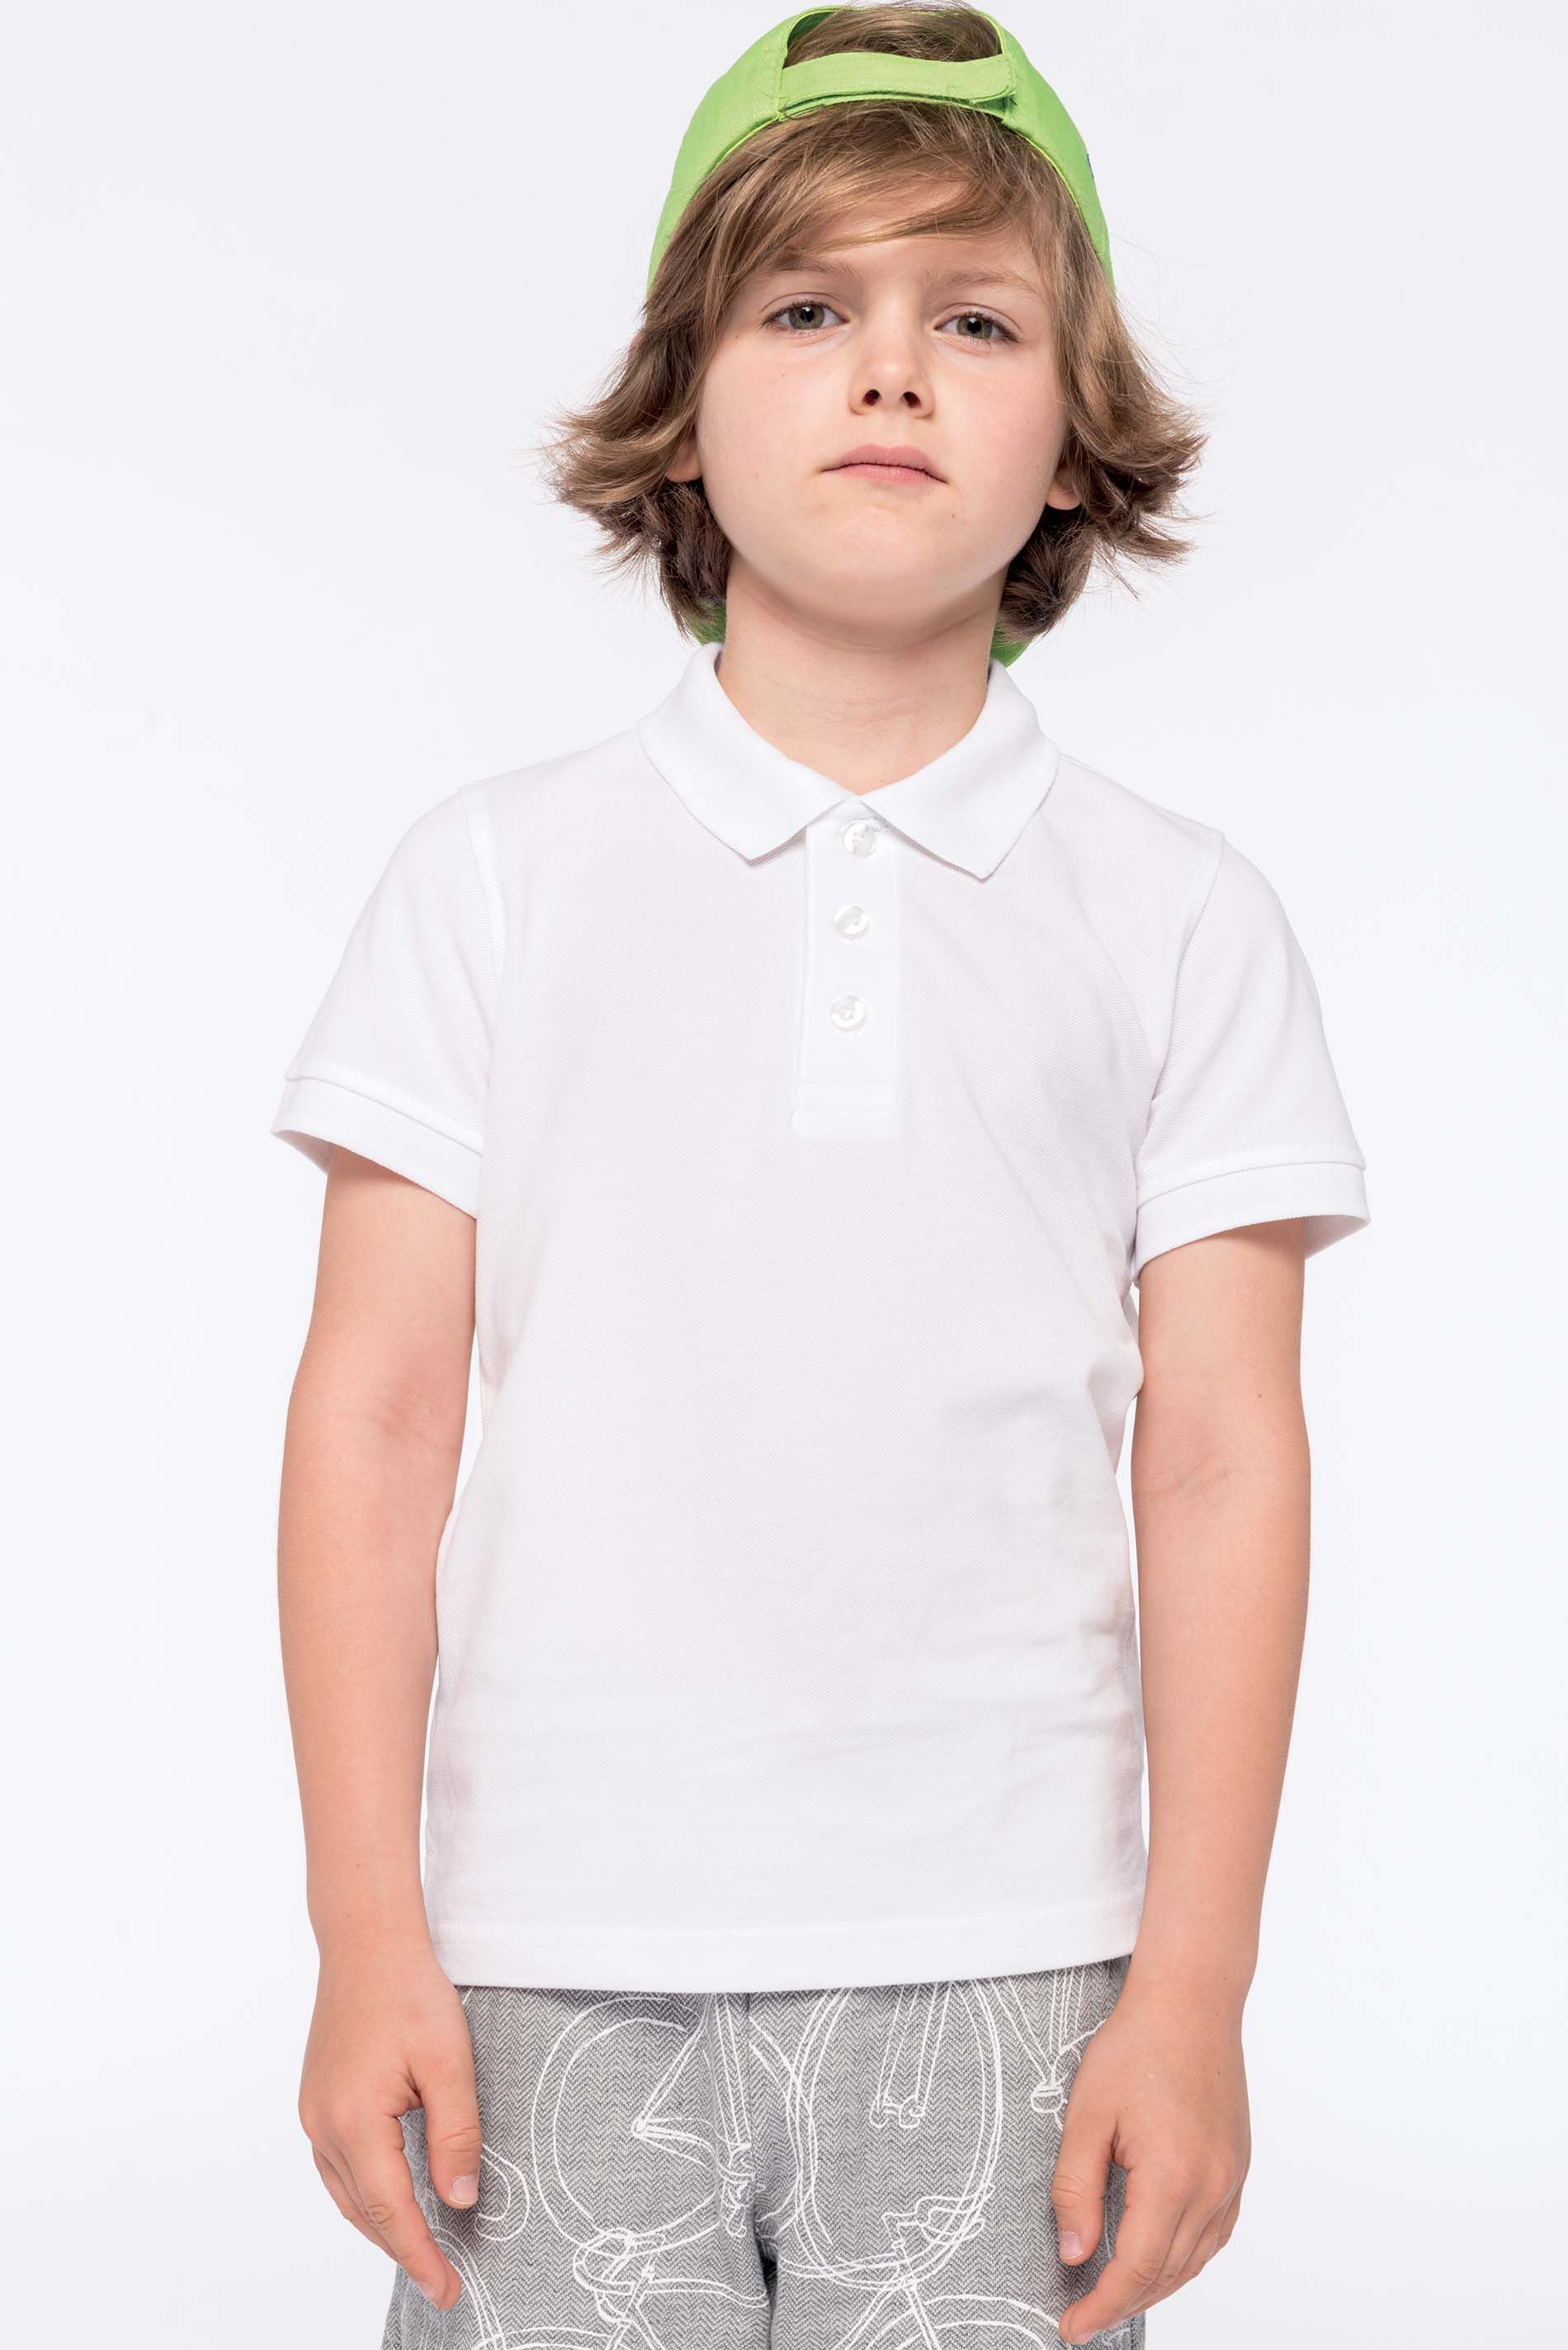 Polo enfant manches courtes K249 - White en vente chez Textile Directe